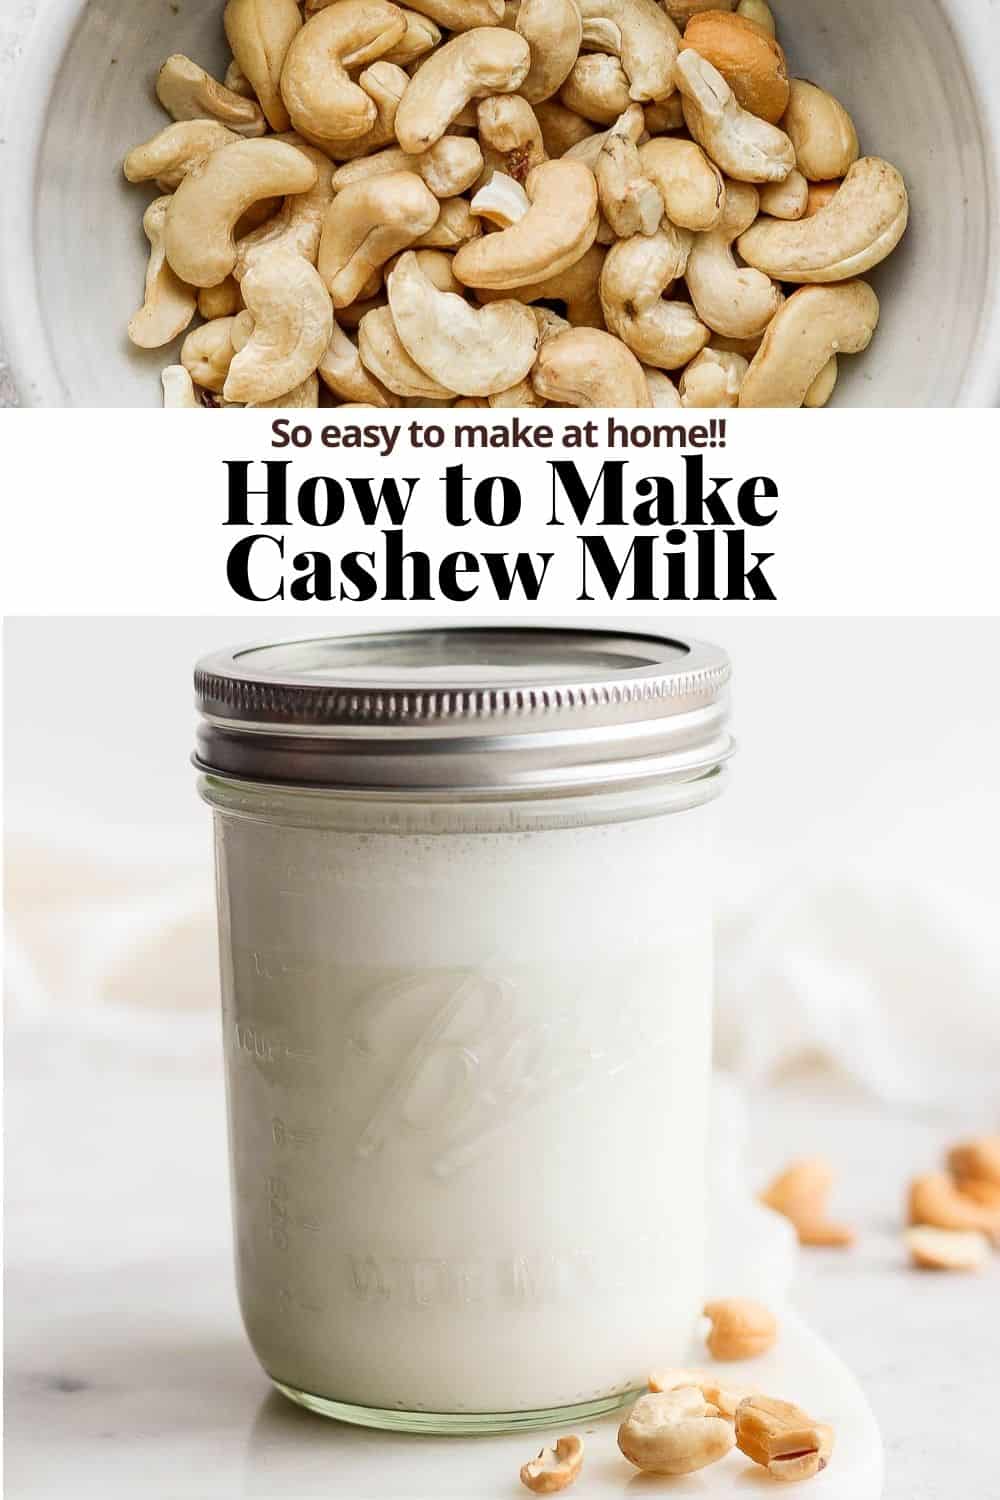 Pinterest image for cashew milk.